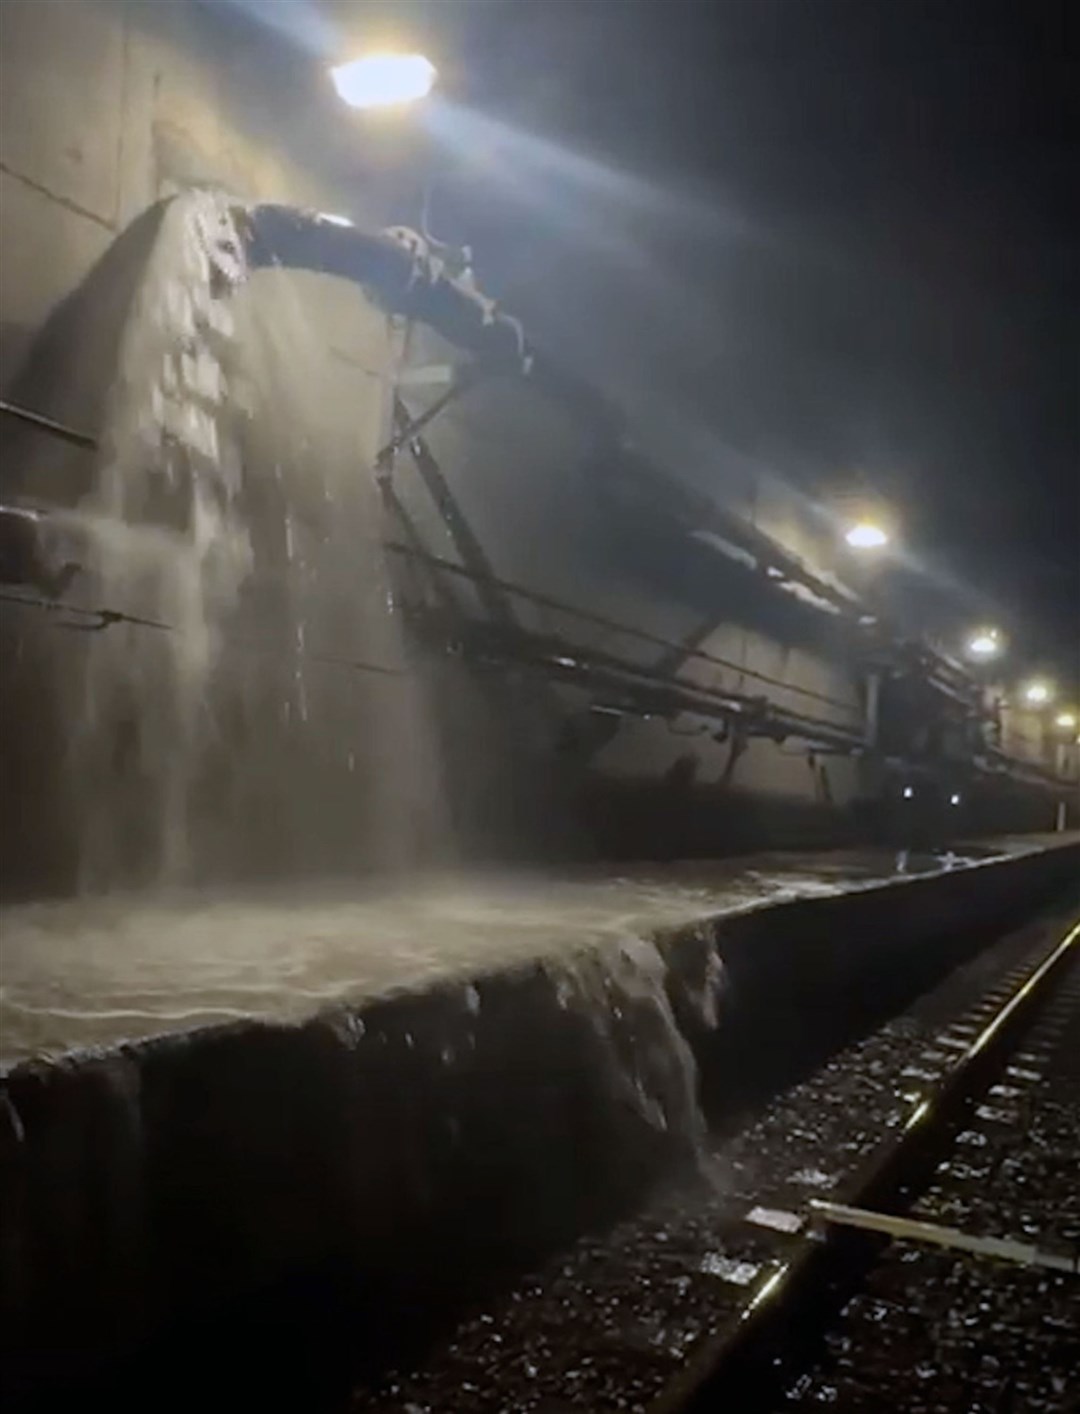 Flooding from a pipe in the Eurostar tunnel near Ebbsfleet in Kent (Southeastern/Network Rail/PA)